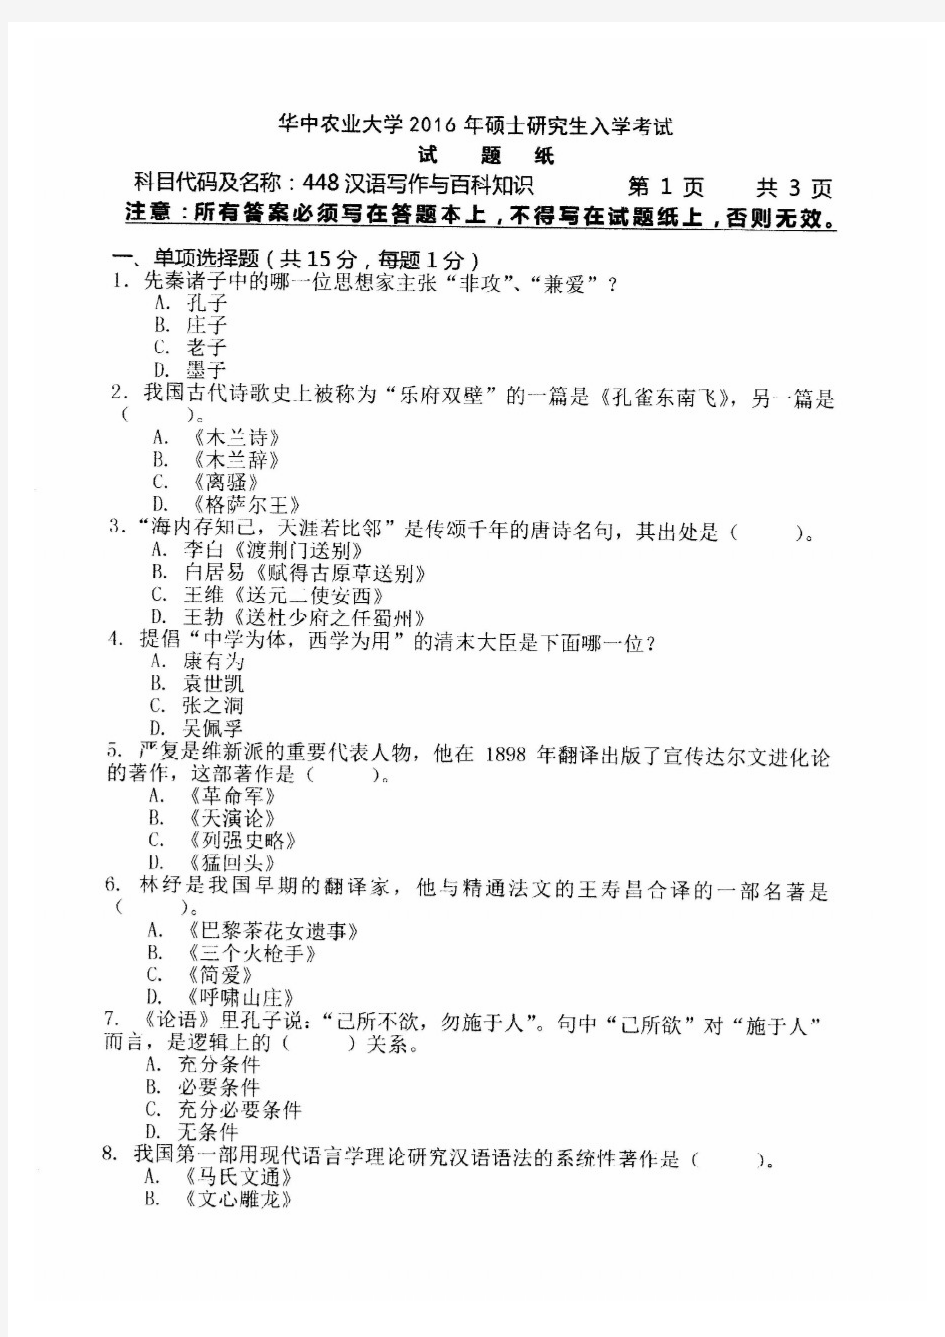 华中农业大学2016年《448汉语写作与百科知识》考研专业课真题试卷